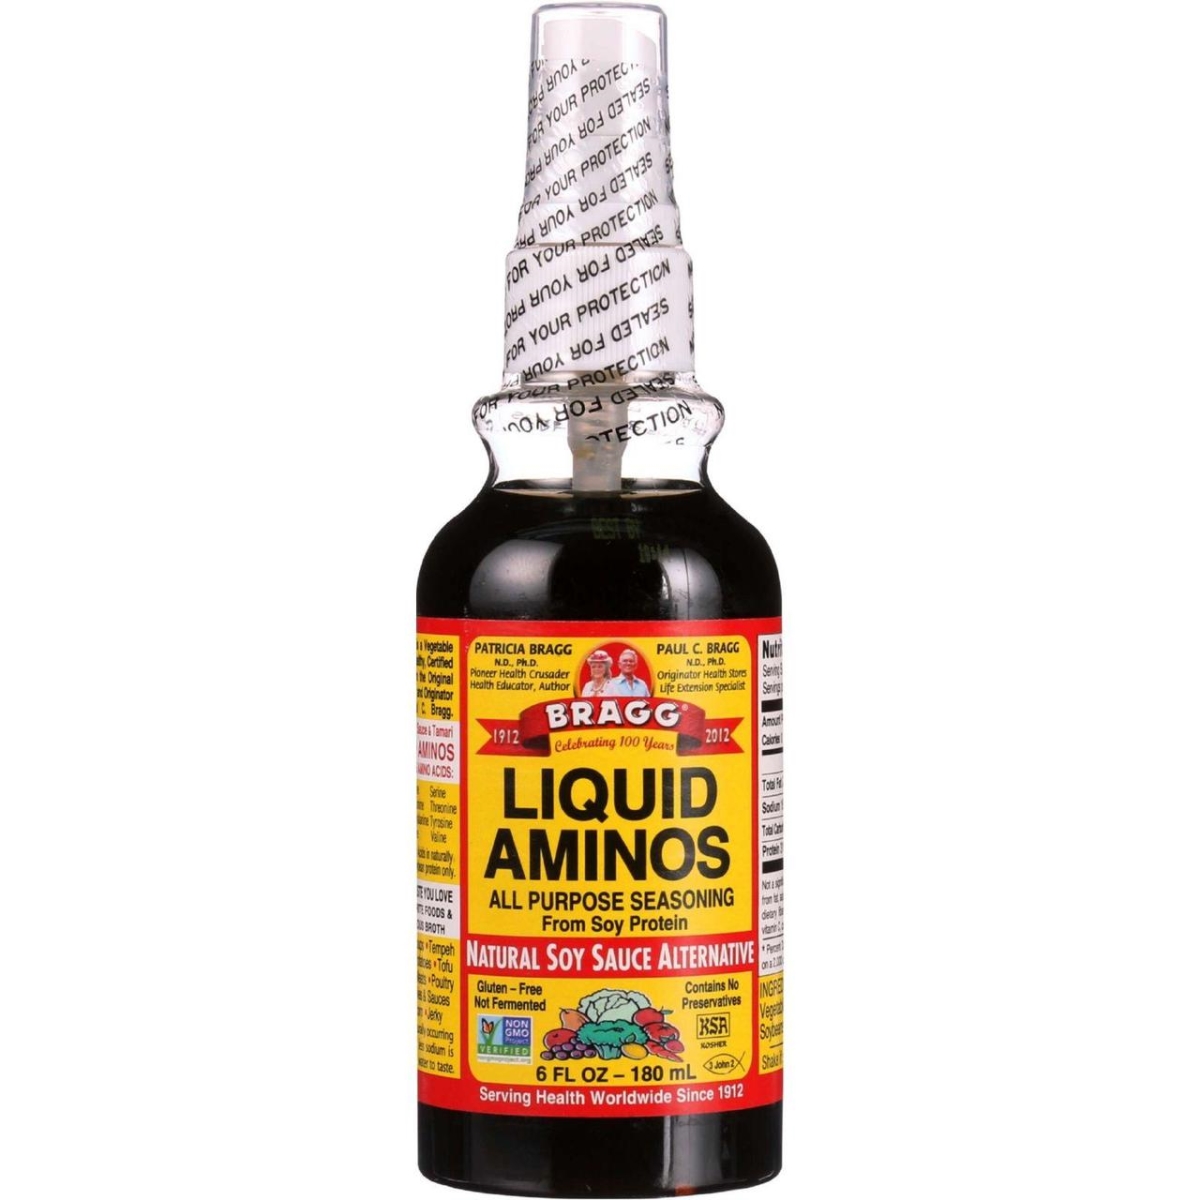 Hg0725663 6 Oz Liquid Aminos Spray Bottle - Case Of 24